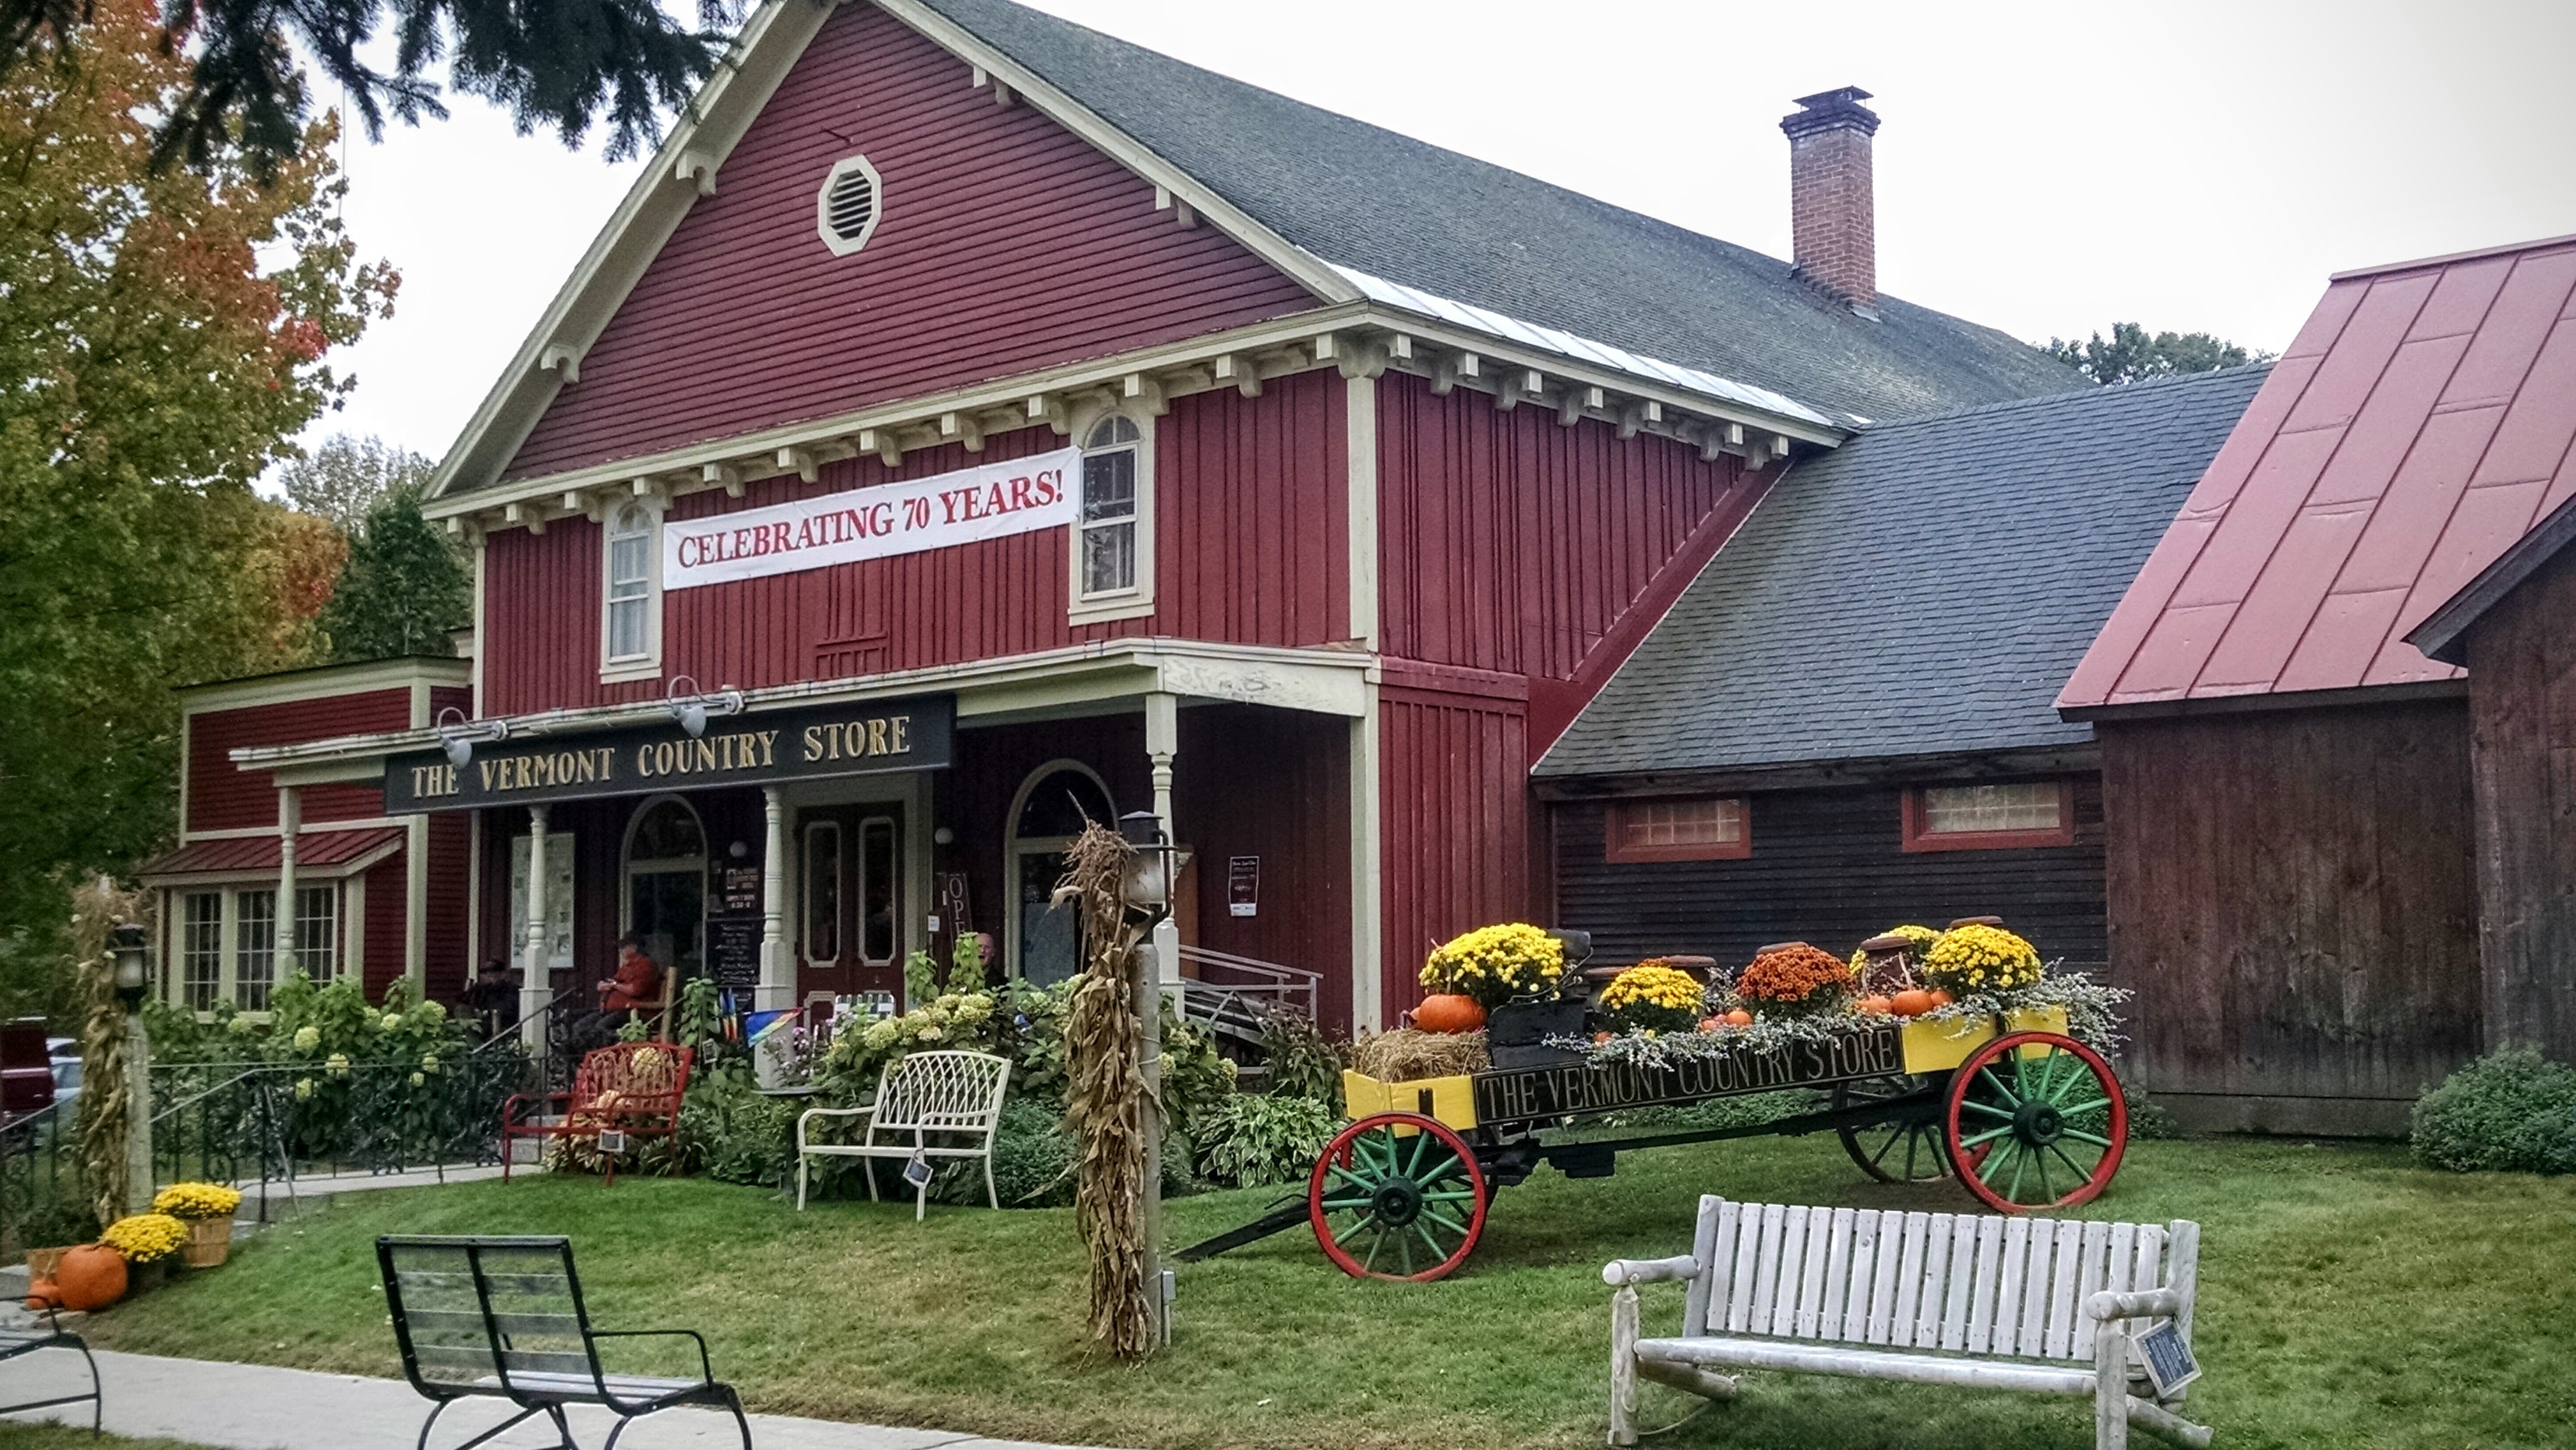 The Vermont Country Store - The Vermont Country Store